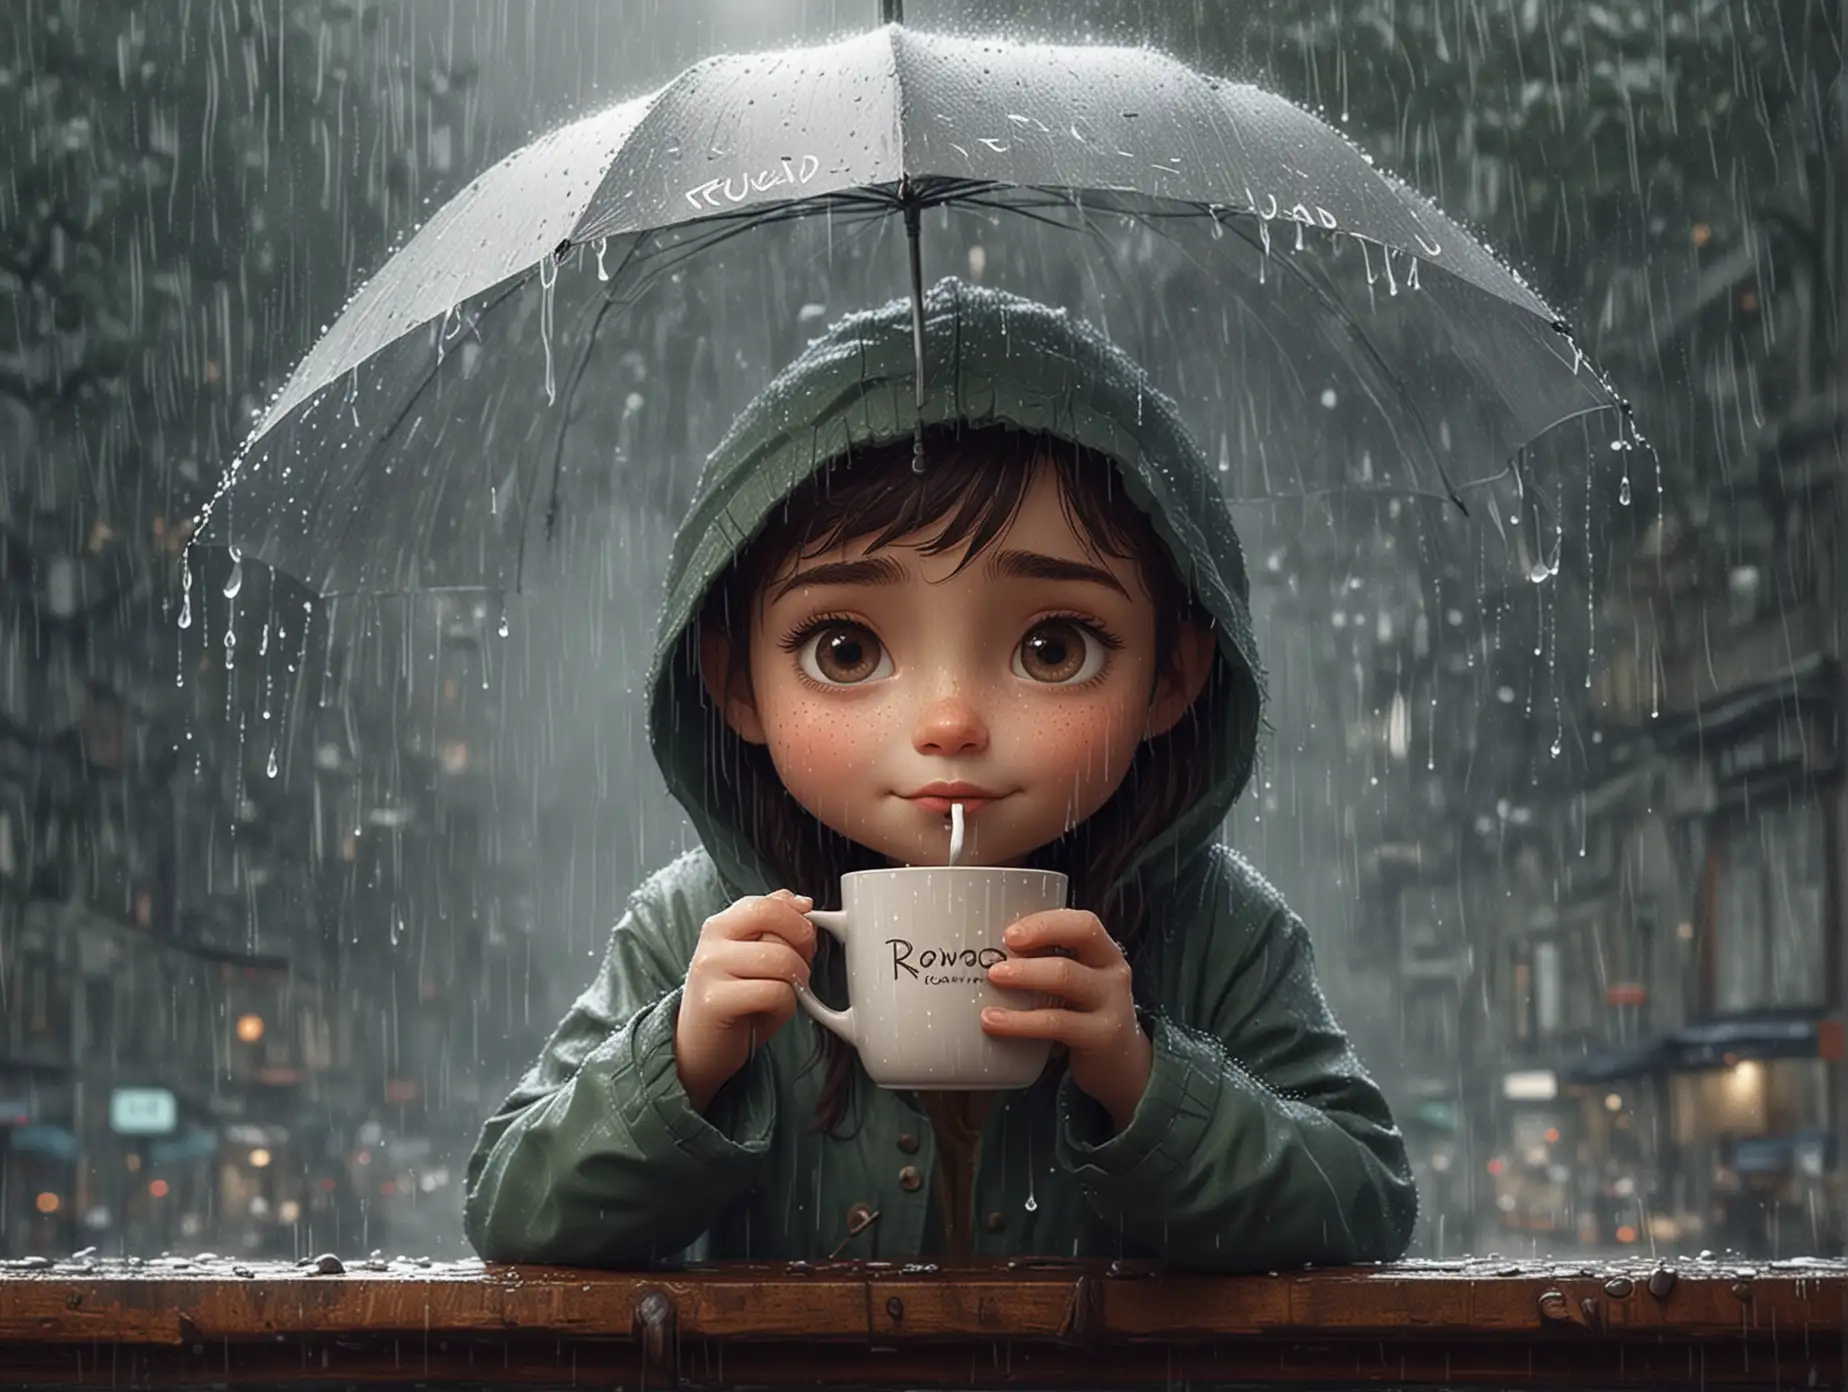 Youth Enjoying Rainy Morning Coffee with Rowad Mug Minimalist Pixar Illustration